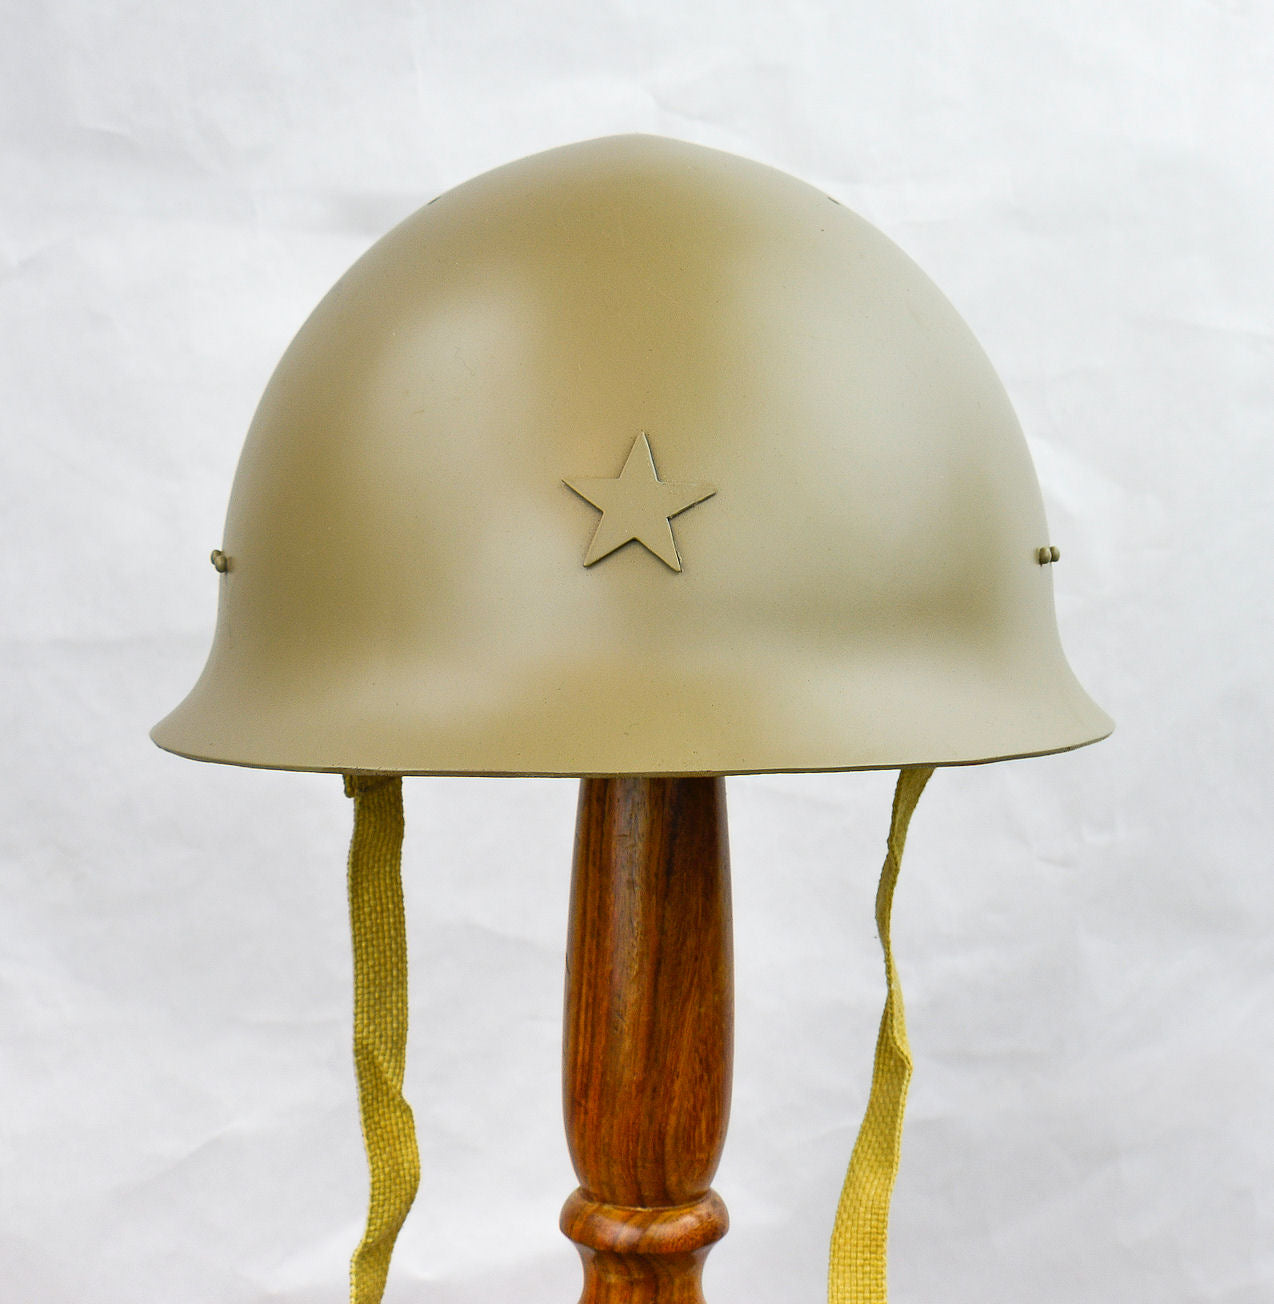 M16 Japanese WWII Helmet